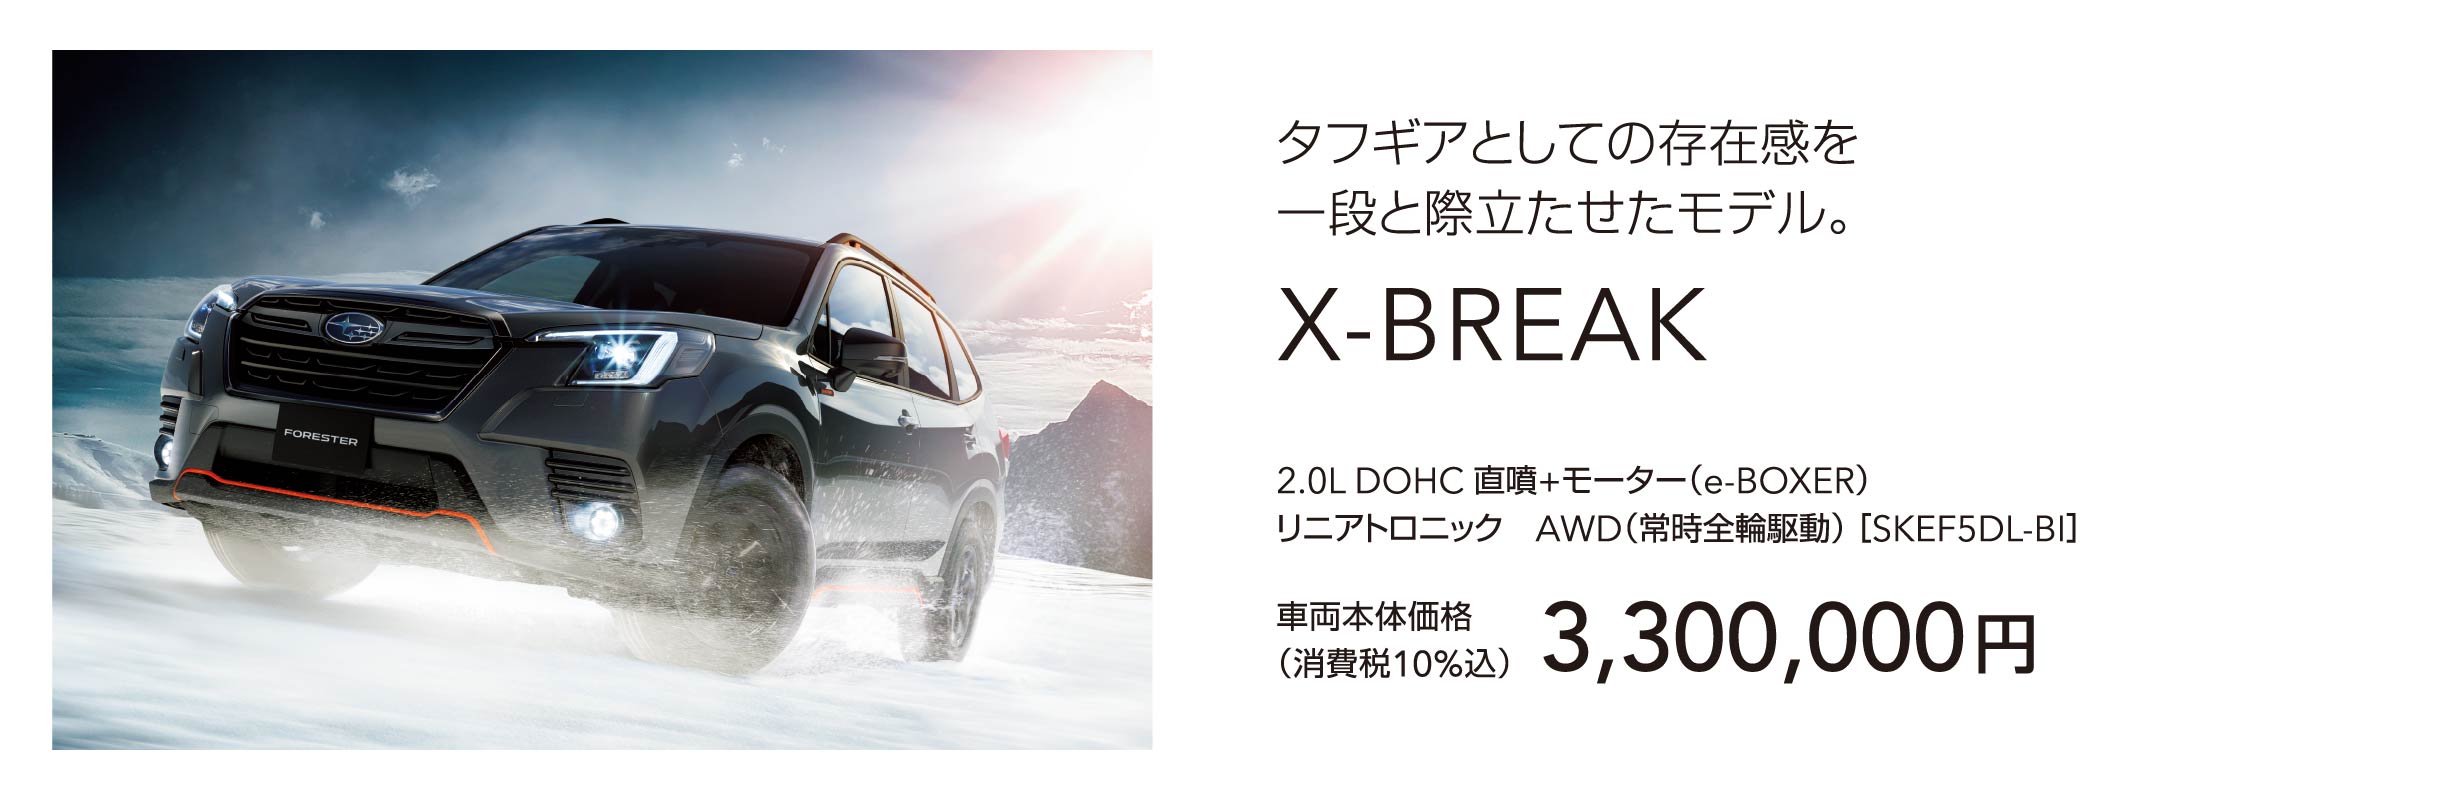 タフギアとしての存在感を一段と際立たせたモデル。X-BREAK 車両本体価格（消費税10%込）3,300,000円